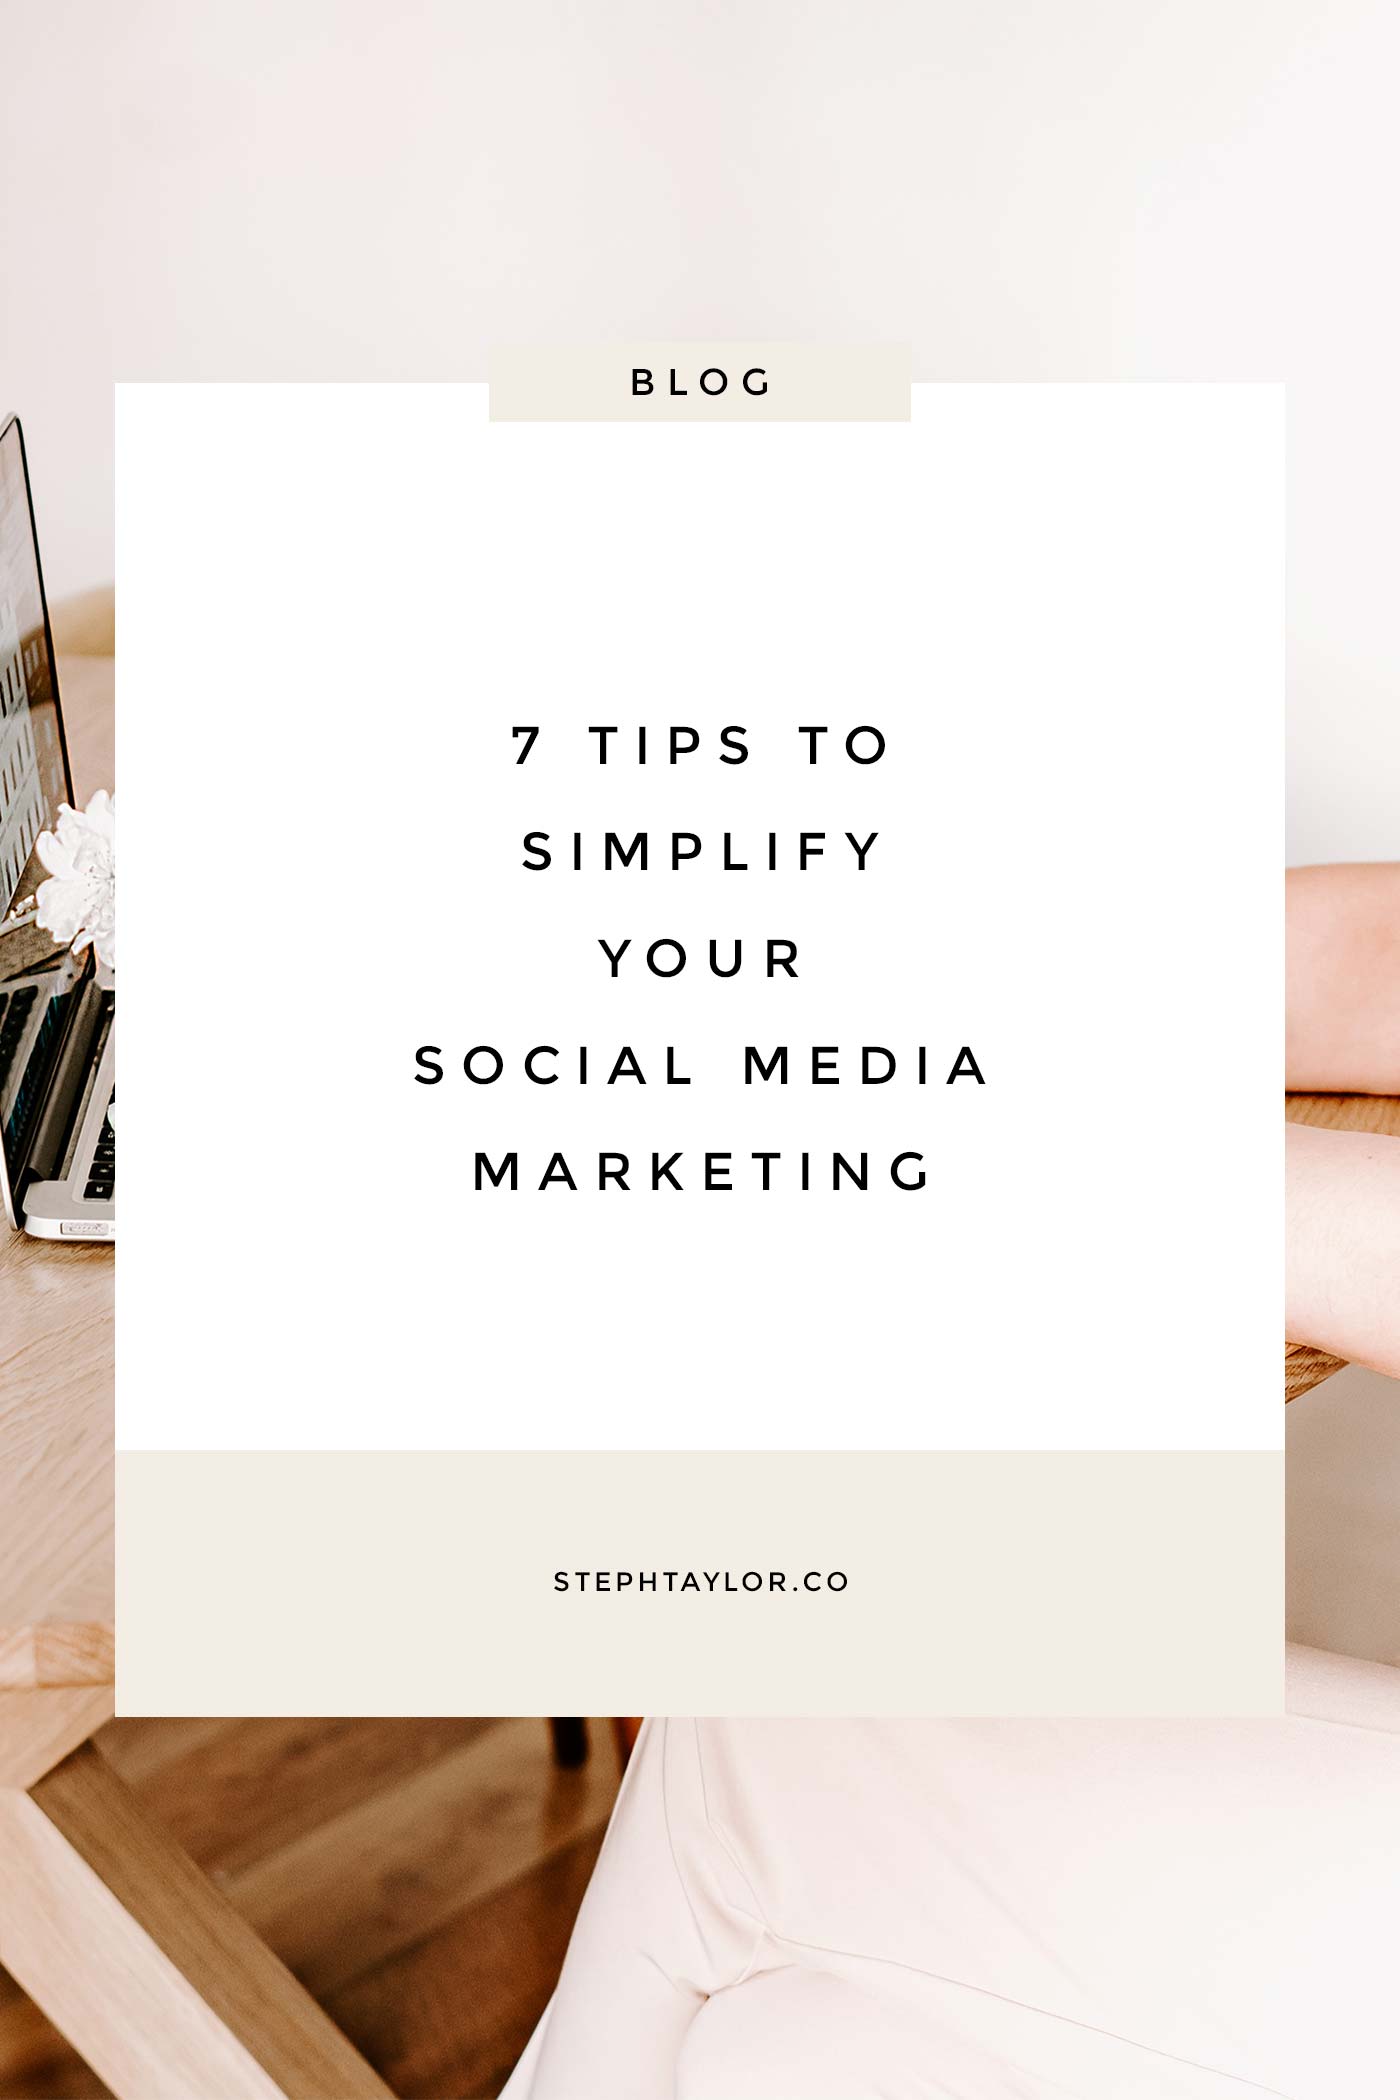 Simplify social media marketing